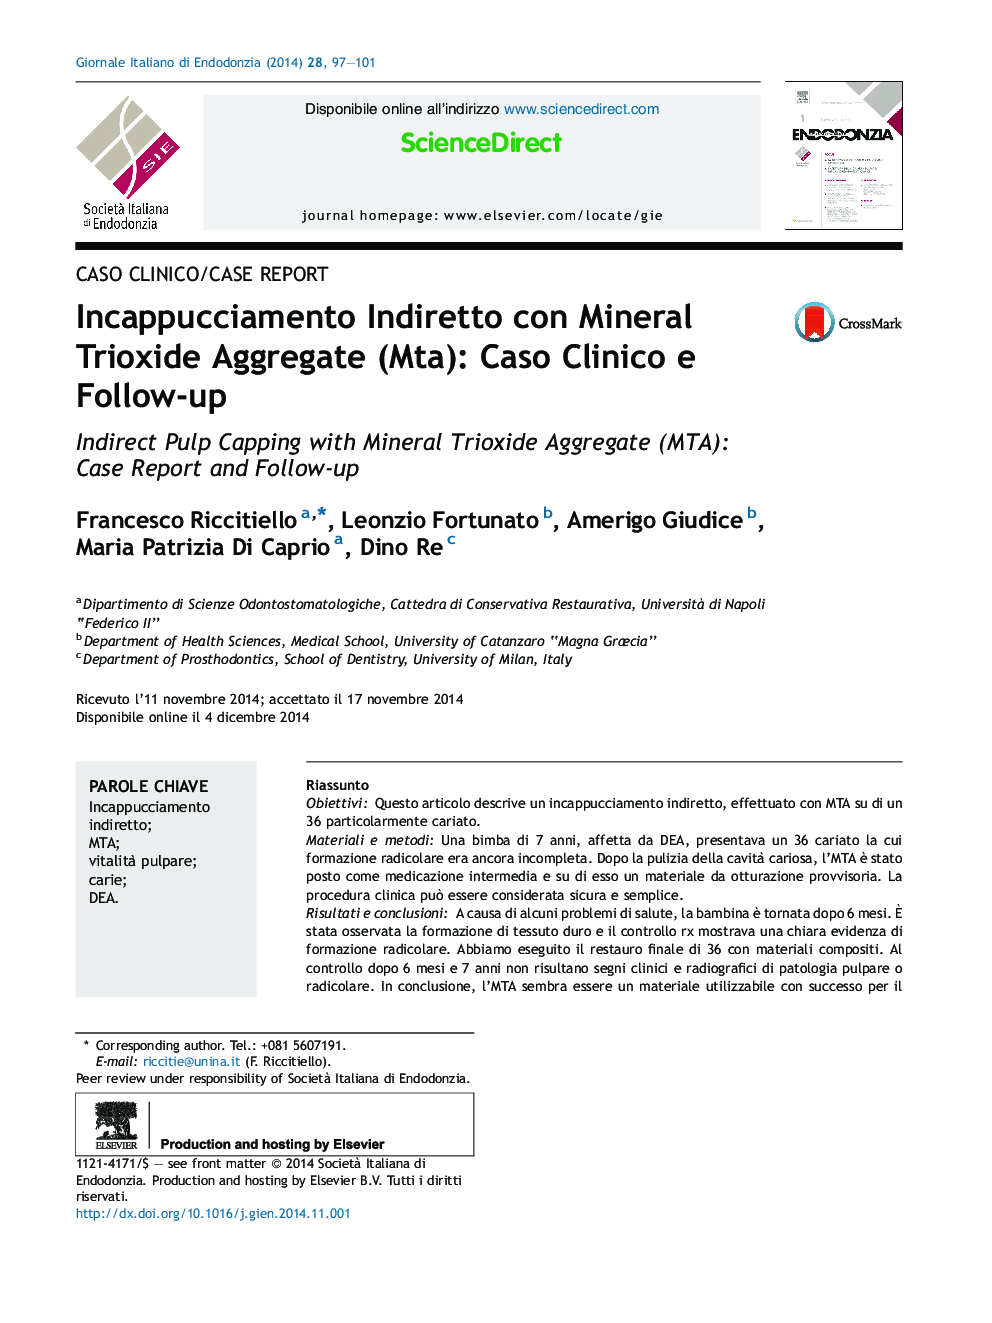 Incappucciamento Indiretto con Mineral Trioxide Aggregate (Mta): Caso Clinico e Follow-up 